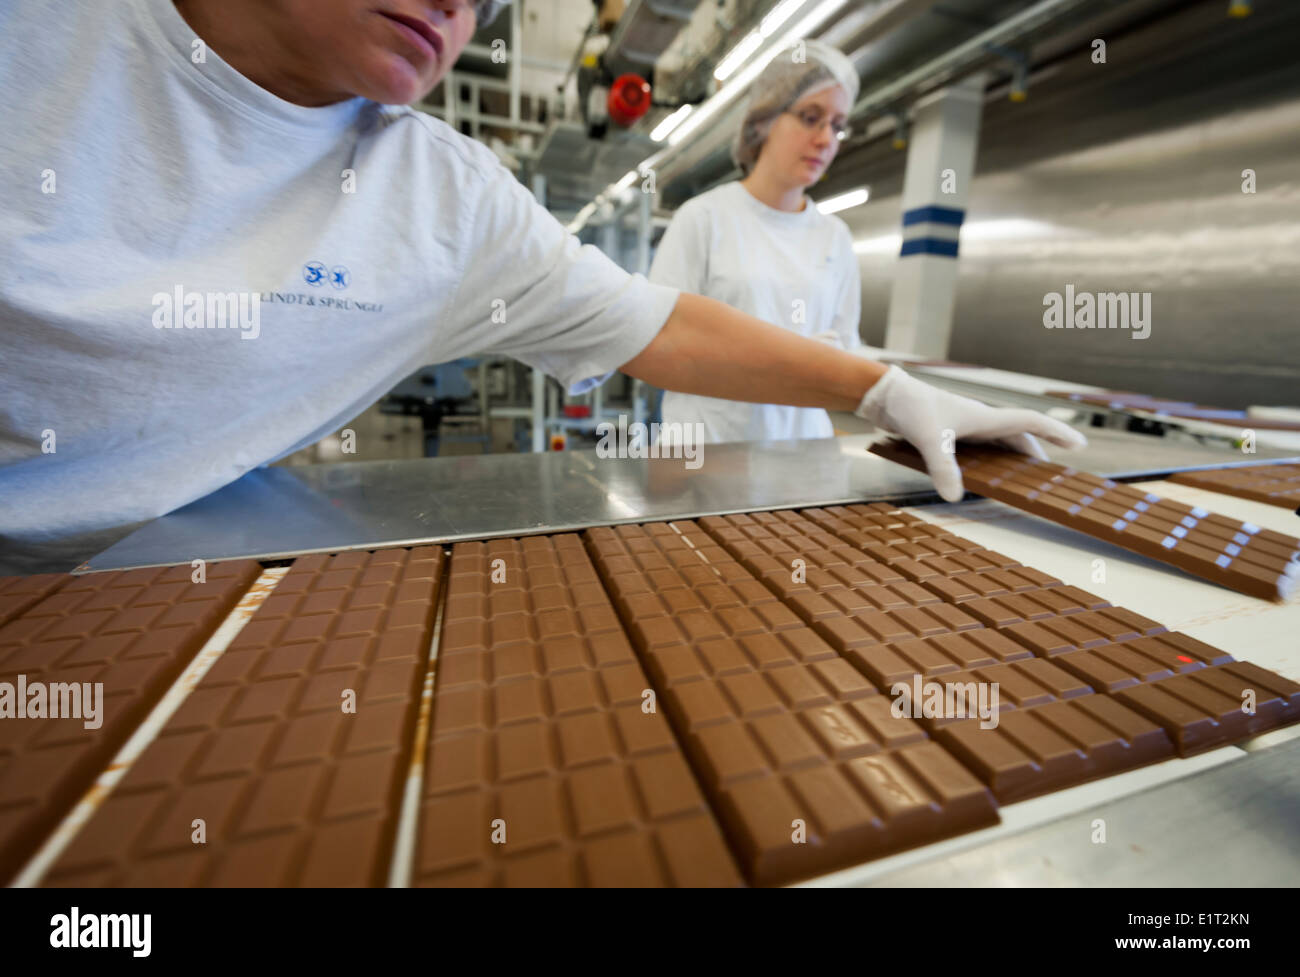 Les travailleurs de l'usine de chocolat suisse Lindt & Spruengli à Zurich / Kilchberg sont l'inspection de la production de barres de chocolat Banque D'Images